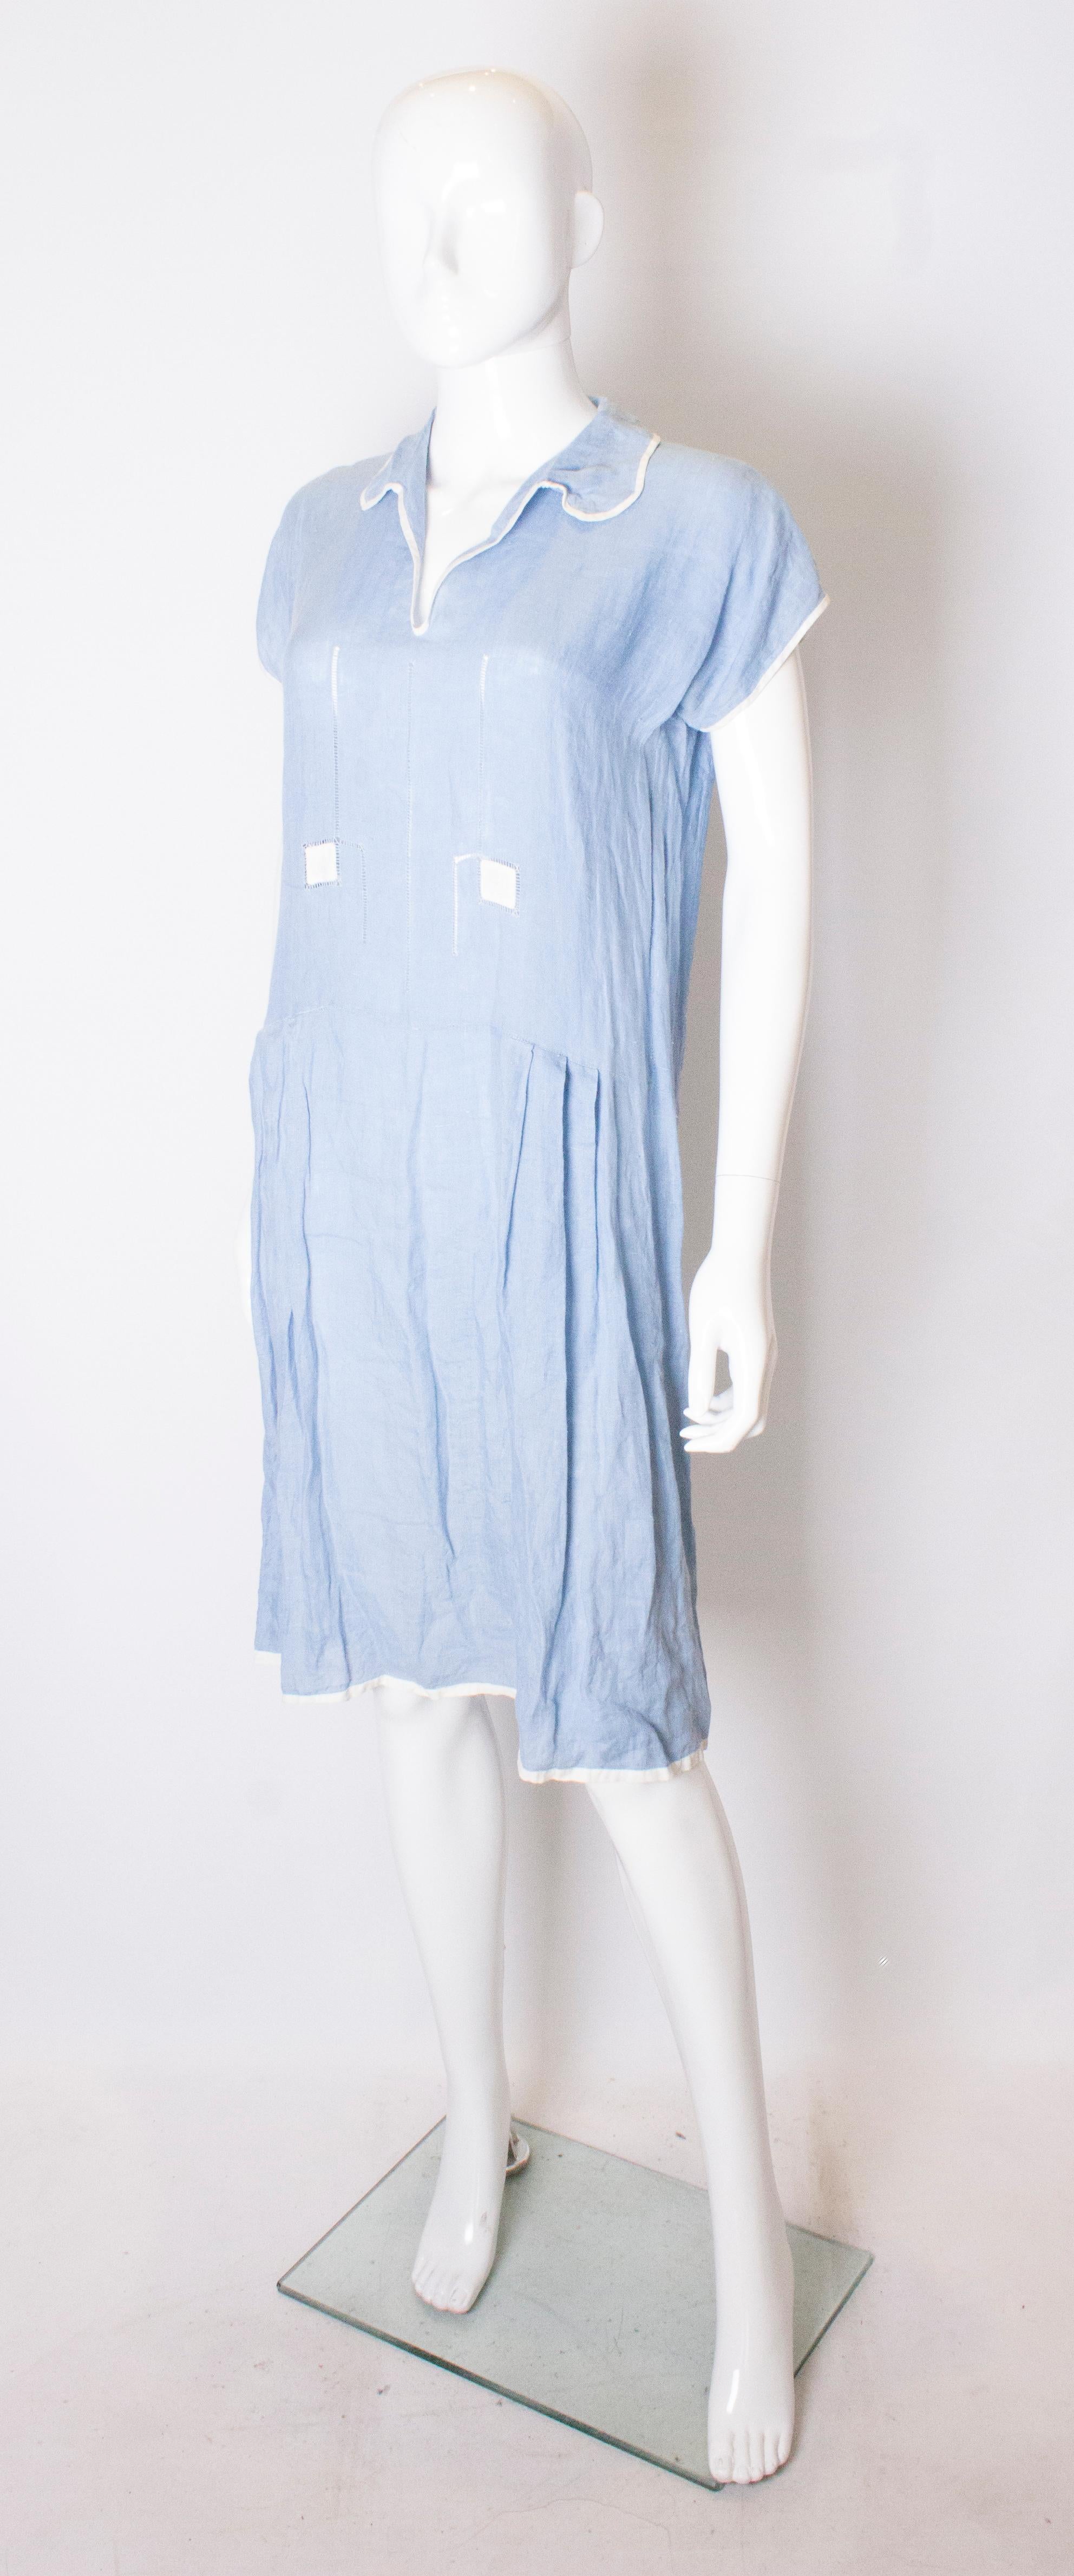 Une jolie robe d'été des années 1920. La robe est en lin bleu ciel avec un passepoil blanc. La robe a un décolleté en V et des fronces au niveau des hanches.